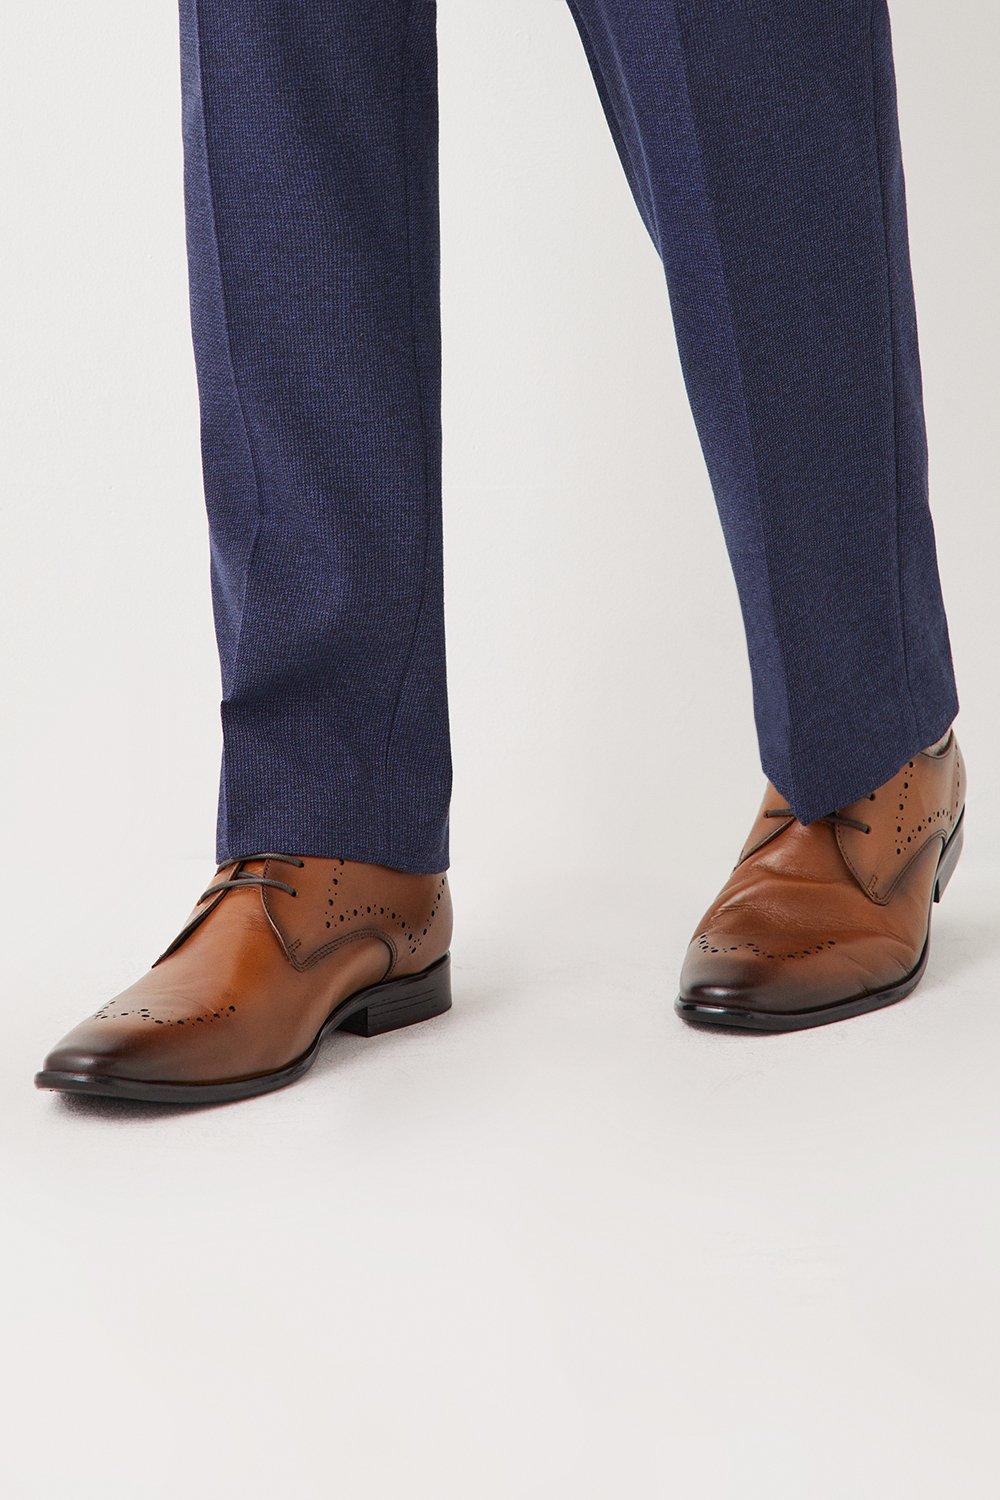 Кожаные туфли-броги Hawkins Comfort со шнуровкой Debenhams, коричневый кожаные туфли airsoft comfort на шнуровке debenhams коричневый